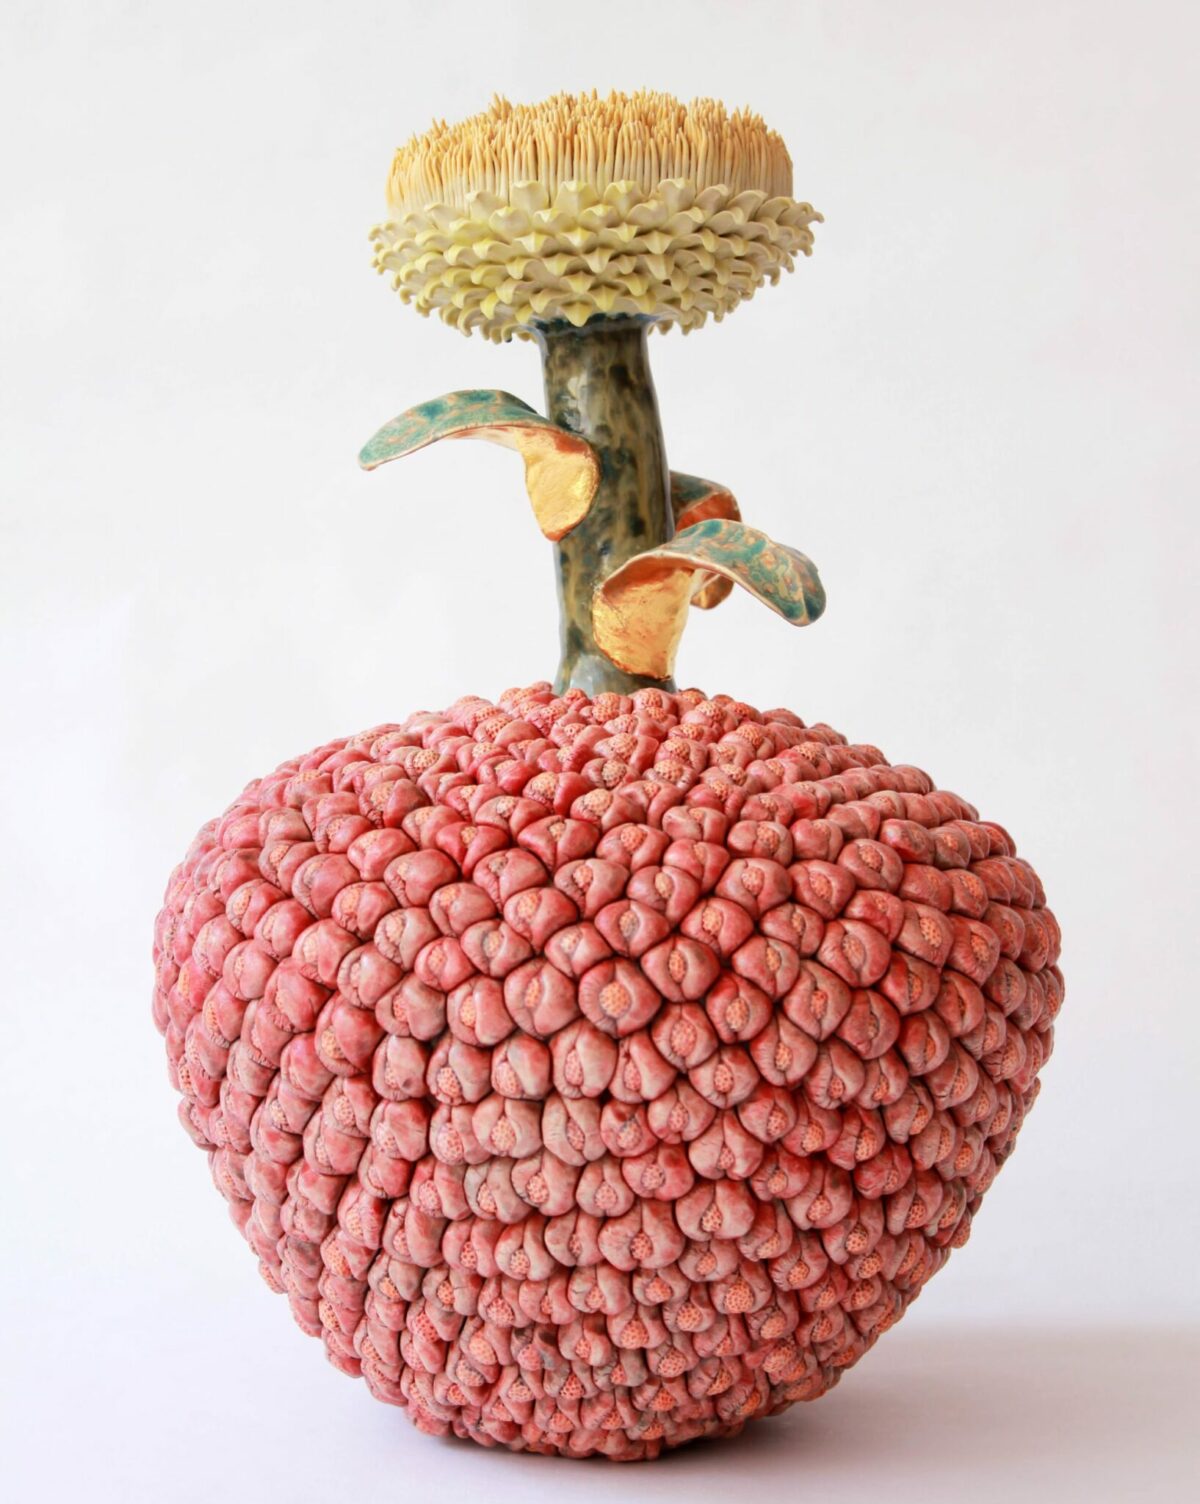 Otherworldly Fruits Fantastical Ceramic Sculptures By Kaori Kurihara 22